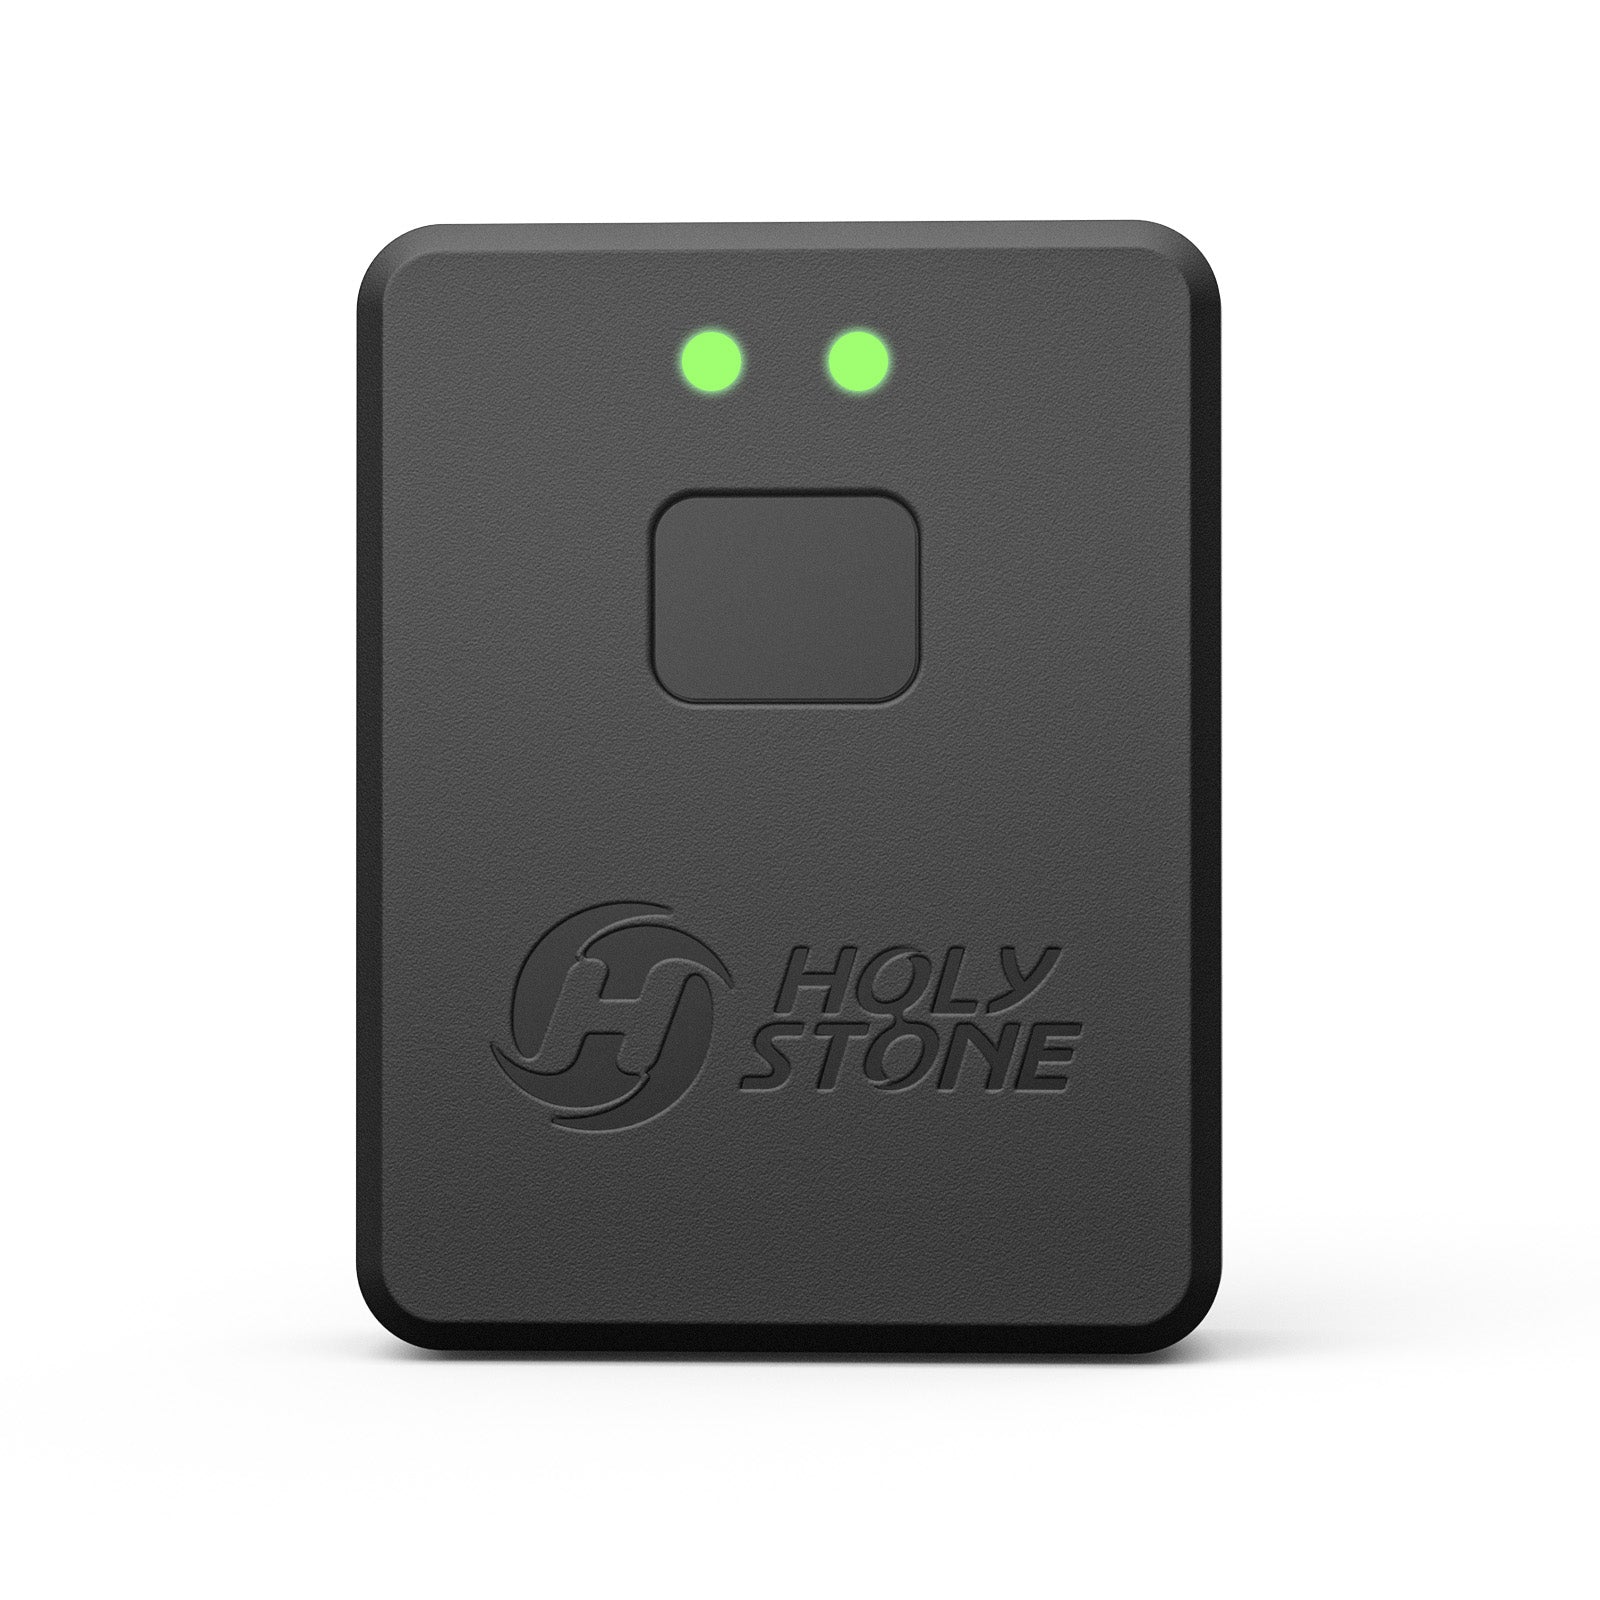 Holy Stone リモートID 外付け 発信機 ドローン登録制度対応 国土交通省 対応モデル 13.9g 5時間動作時間 内蔵式バッテリー 日本語取扱説明書 ベルクロ付き 技適認証済み 100g以上ブラシレスモータードローンに対応 HS175D HS700E HS720E HS700D HS720 HS166に搭載可能 HSRID01